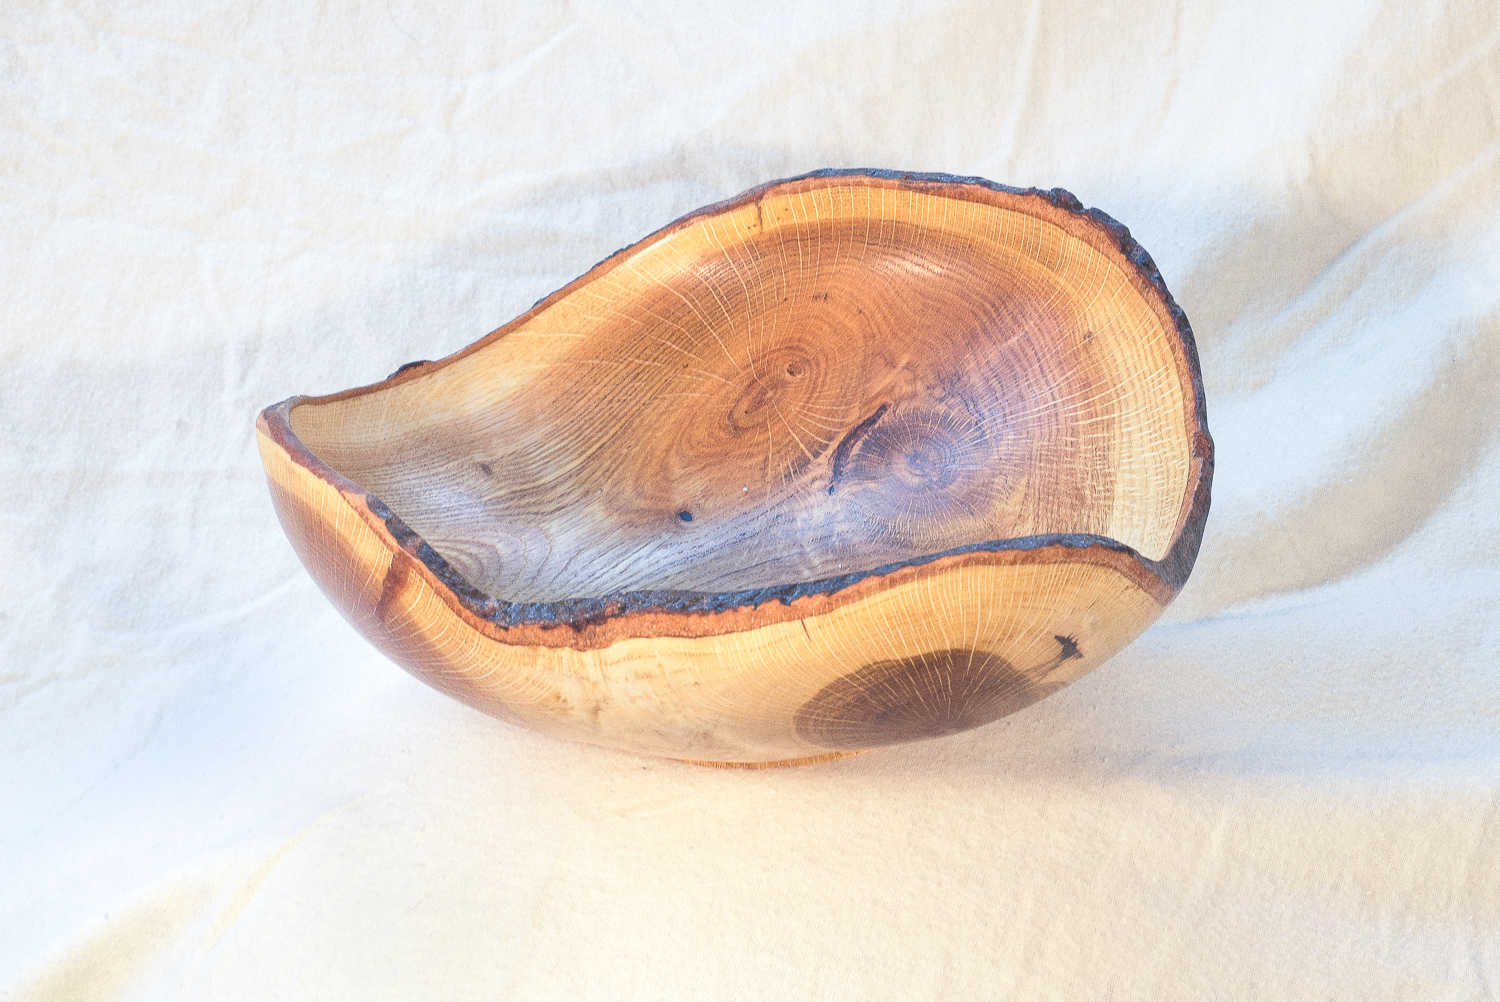 Oak, 11 x 3 inches by Sandy Renna